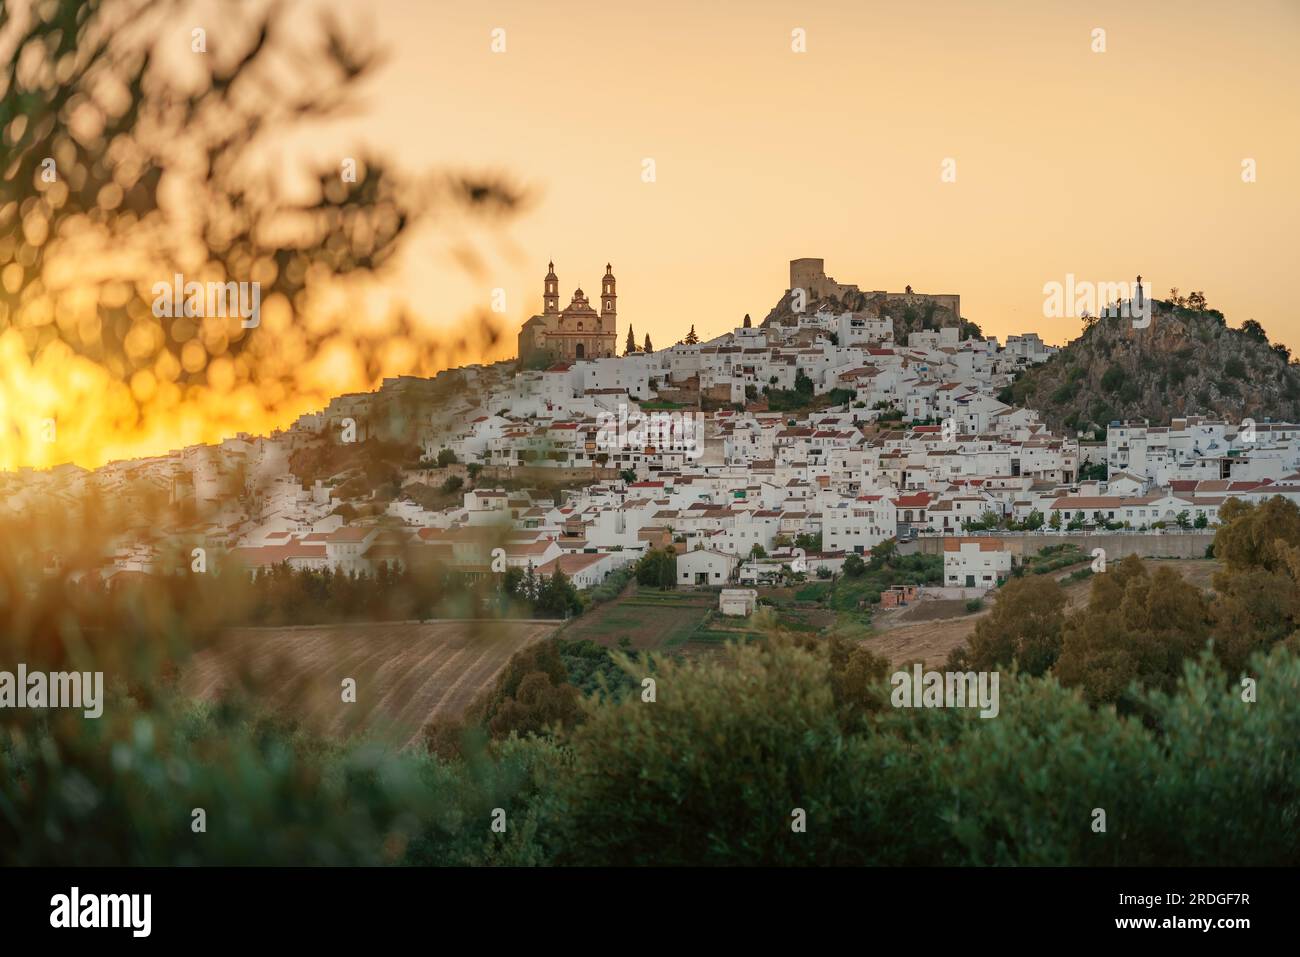 Skyline von Olvera bei Sonnenuntergang mit Kirche, Schloss und Penon del Sagrado Corazon - Olvera, Andalusien, Spanien Stockfoto